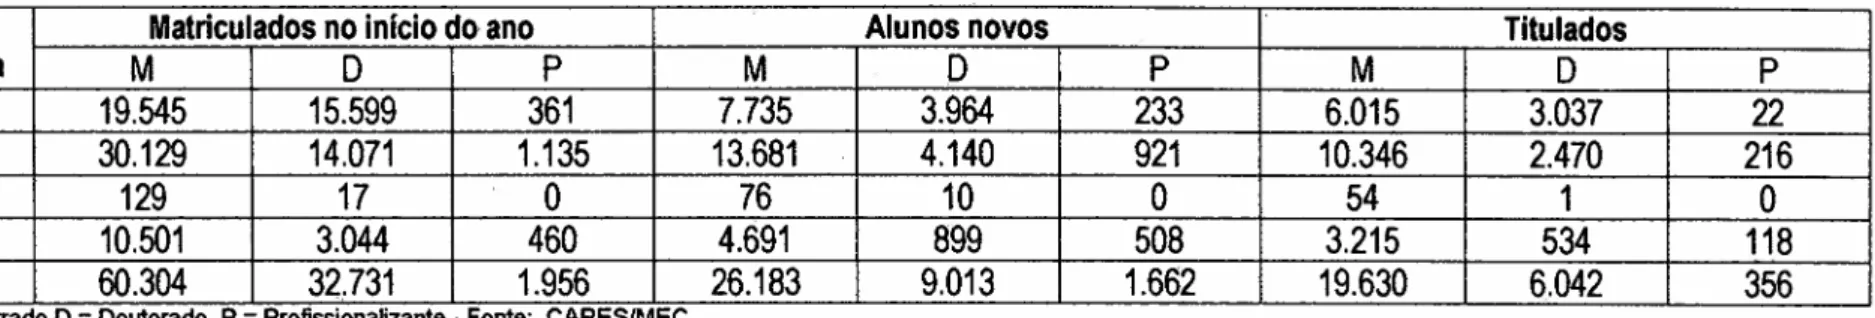 Tabela 7: Número de alunos (matriculados e novos) de pós-graduaçãojihgfedcbaZYXWVUTSRQPONMLKJIHGFEDCBA S trie to -s e n s o e de titulados em 2001, por tipo de curso e por dependência administrativa